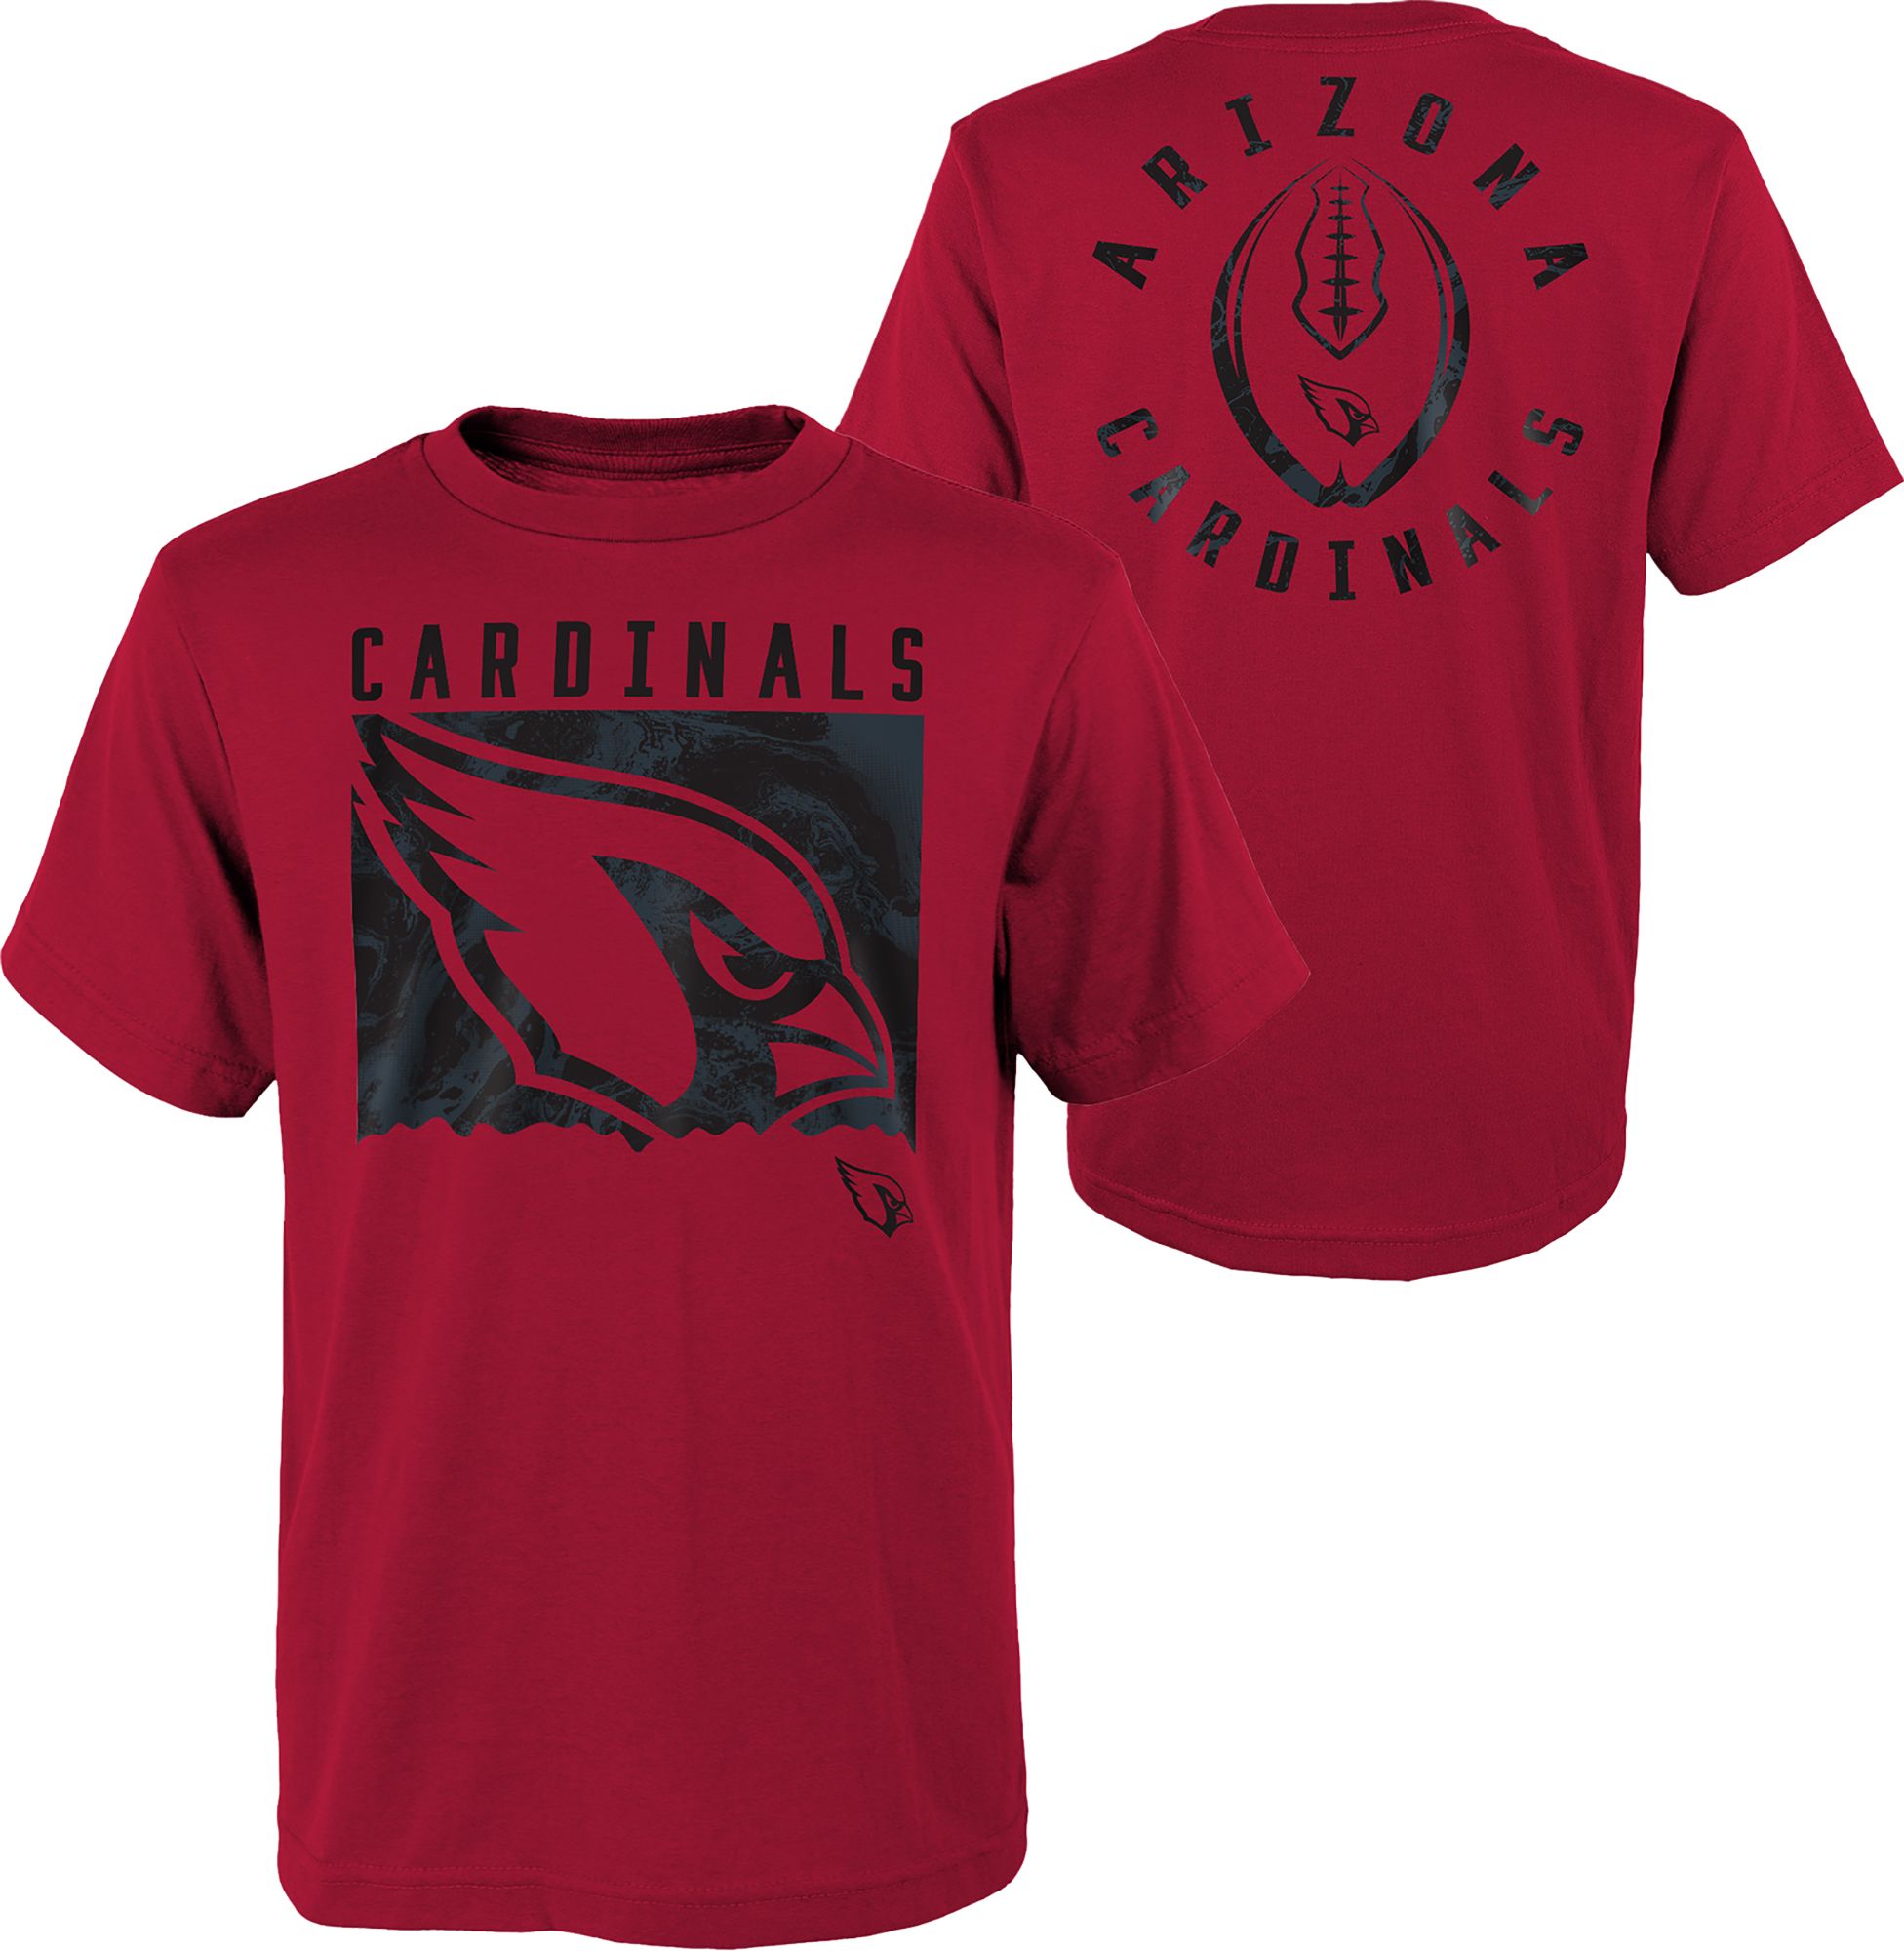 Arizona Cardinals apparel